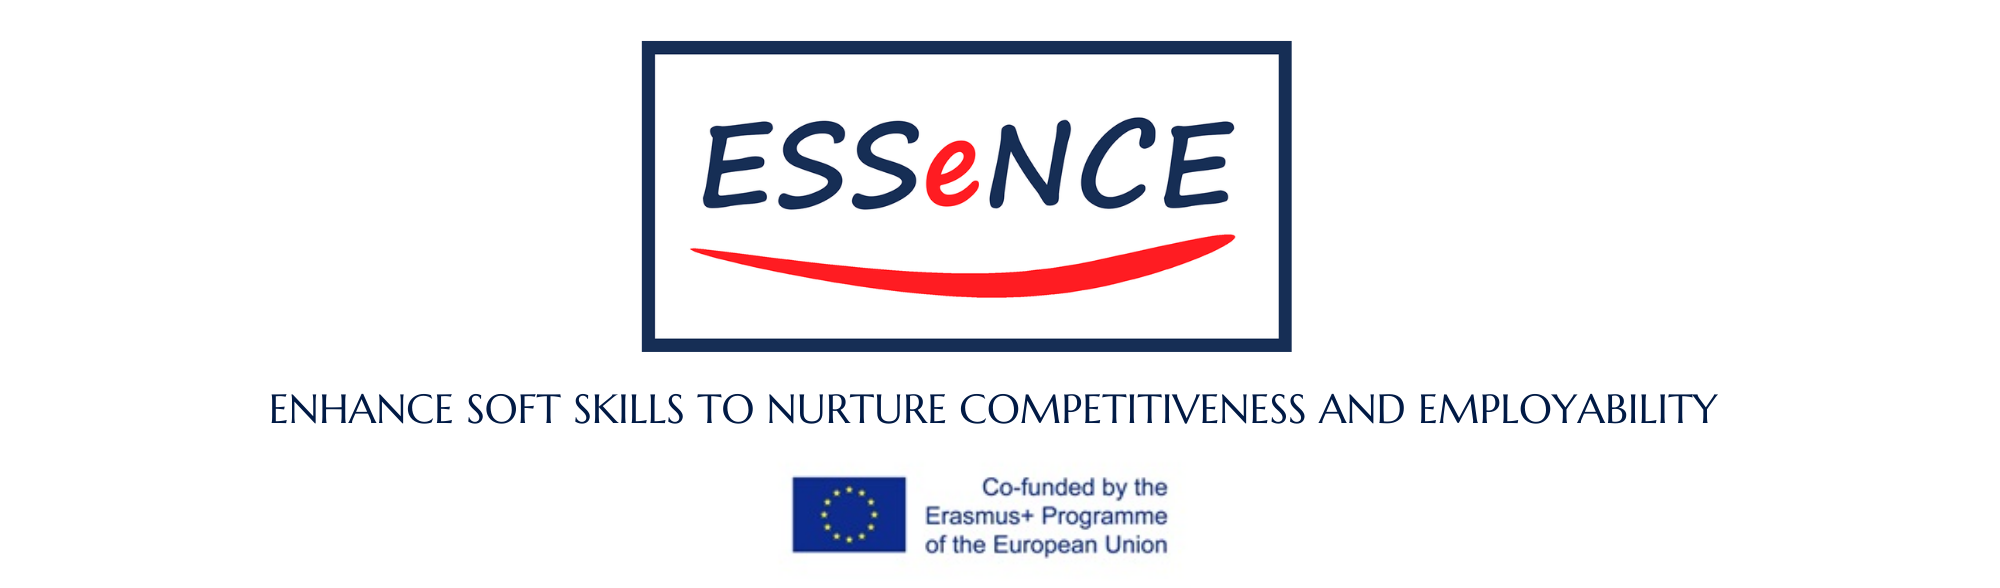 Essence logotype and Erasmus logo